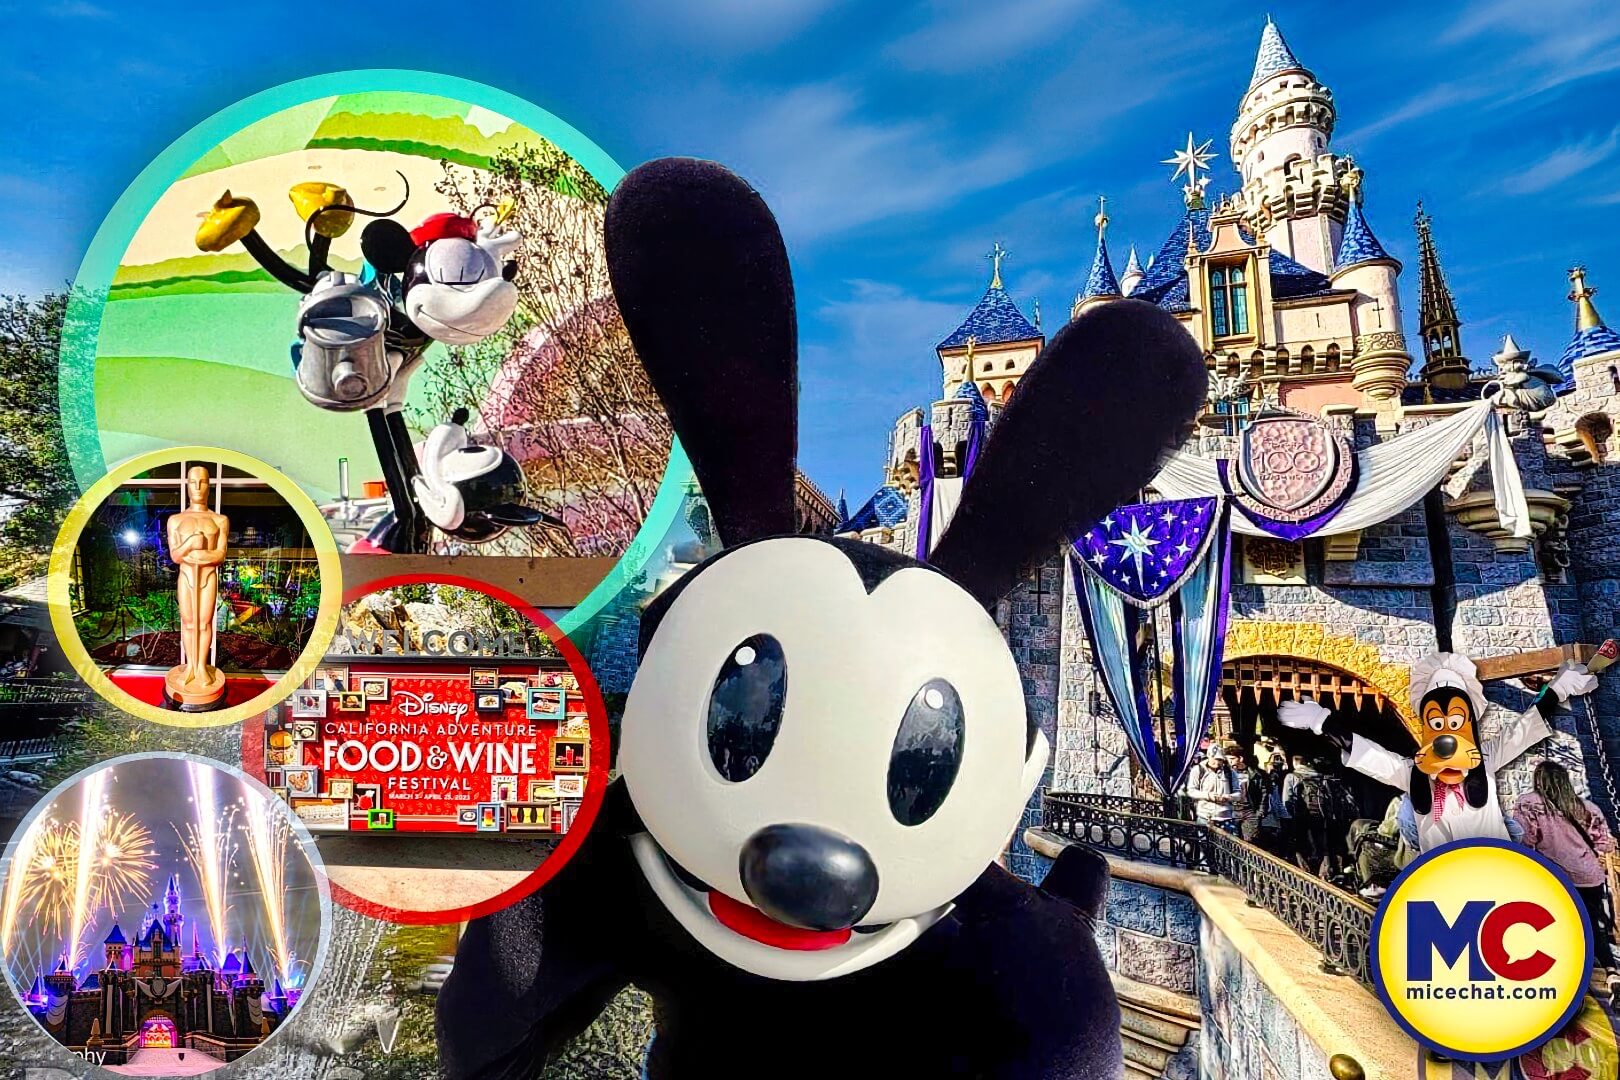 DLR - 100 Years of Wonder - Spirit Jersey Mickey & Friends Disneyland  Resort Pullover (Adult)